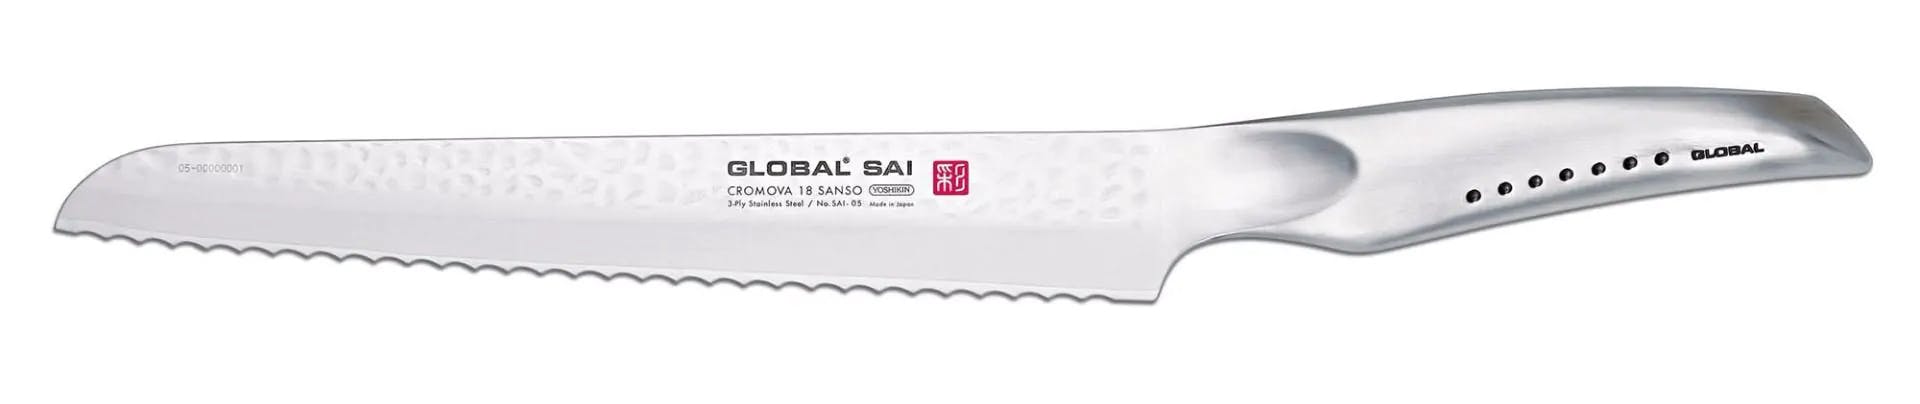 Global Sai 7-Piece Knife Block Set